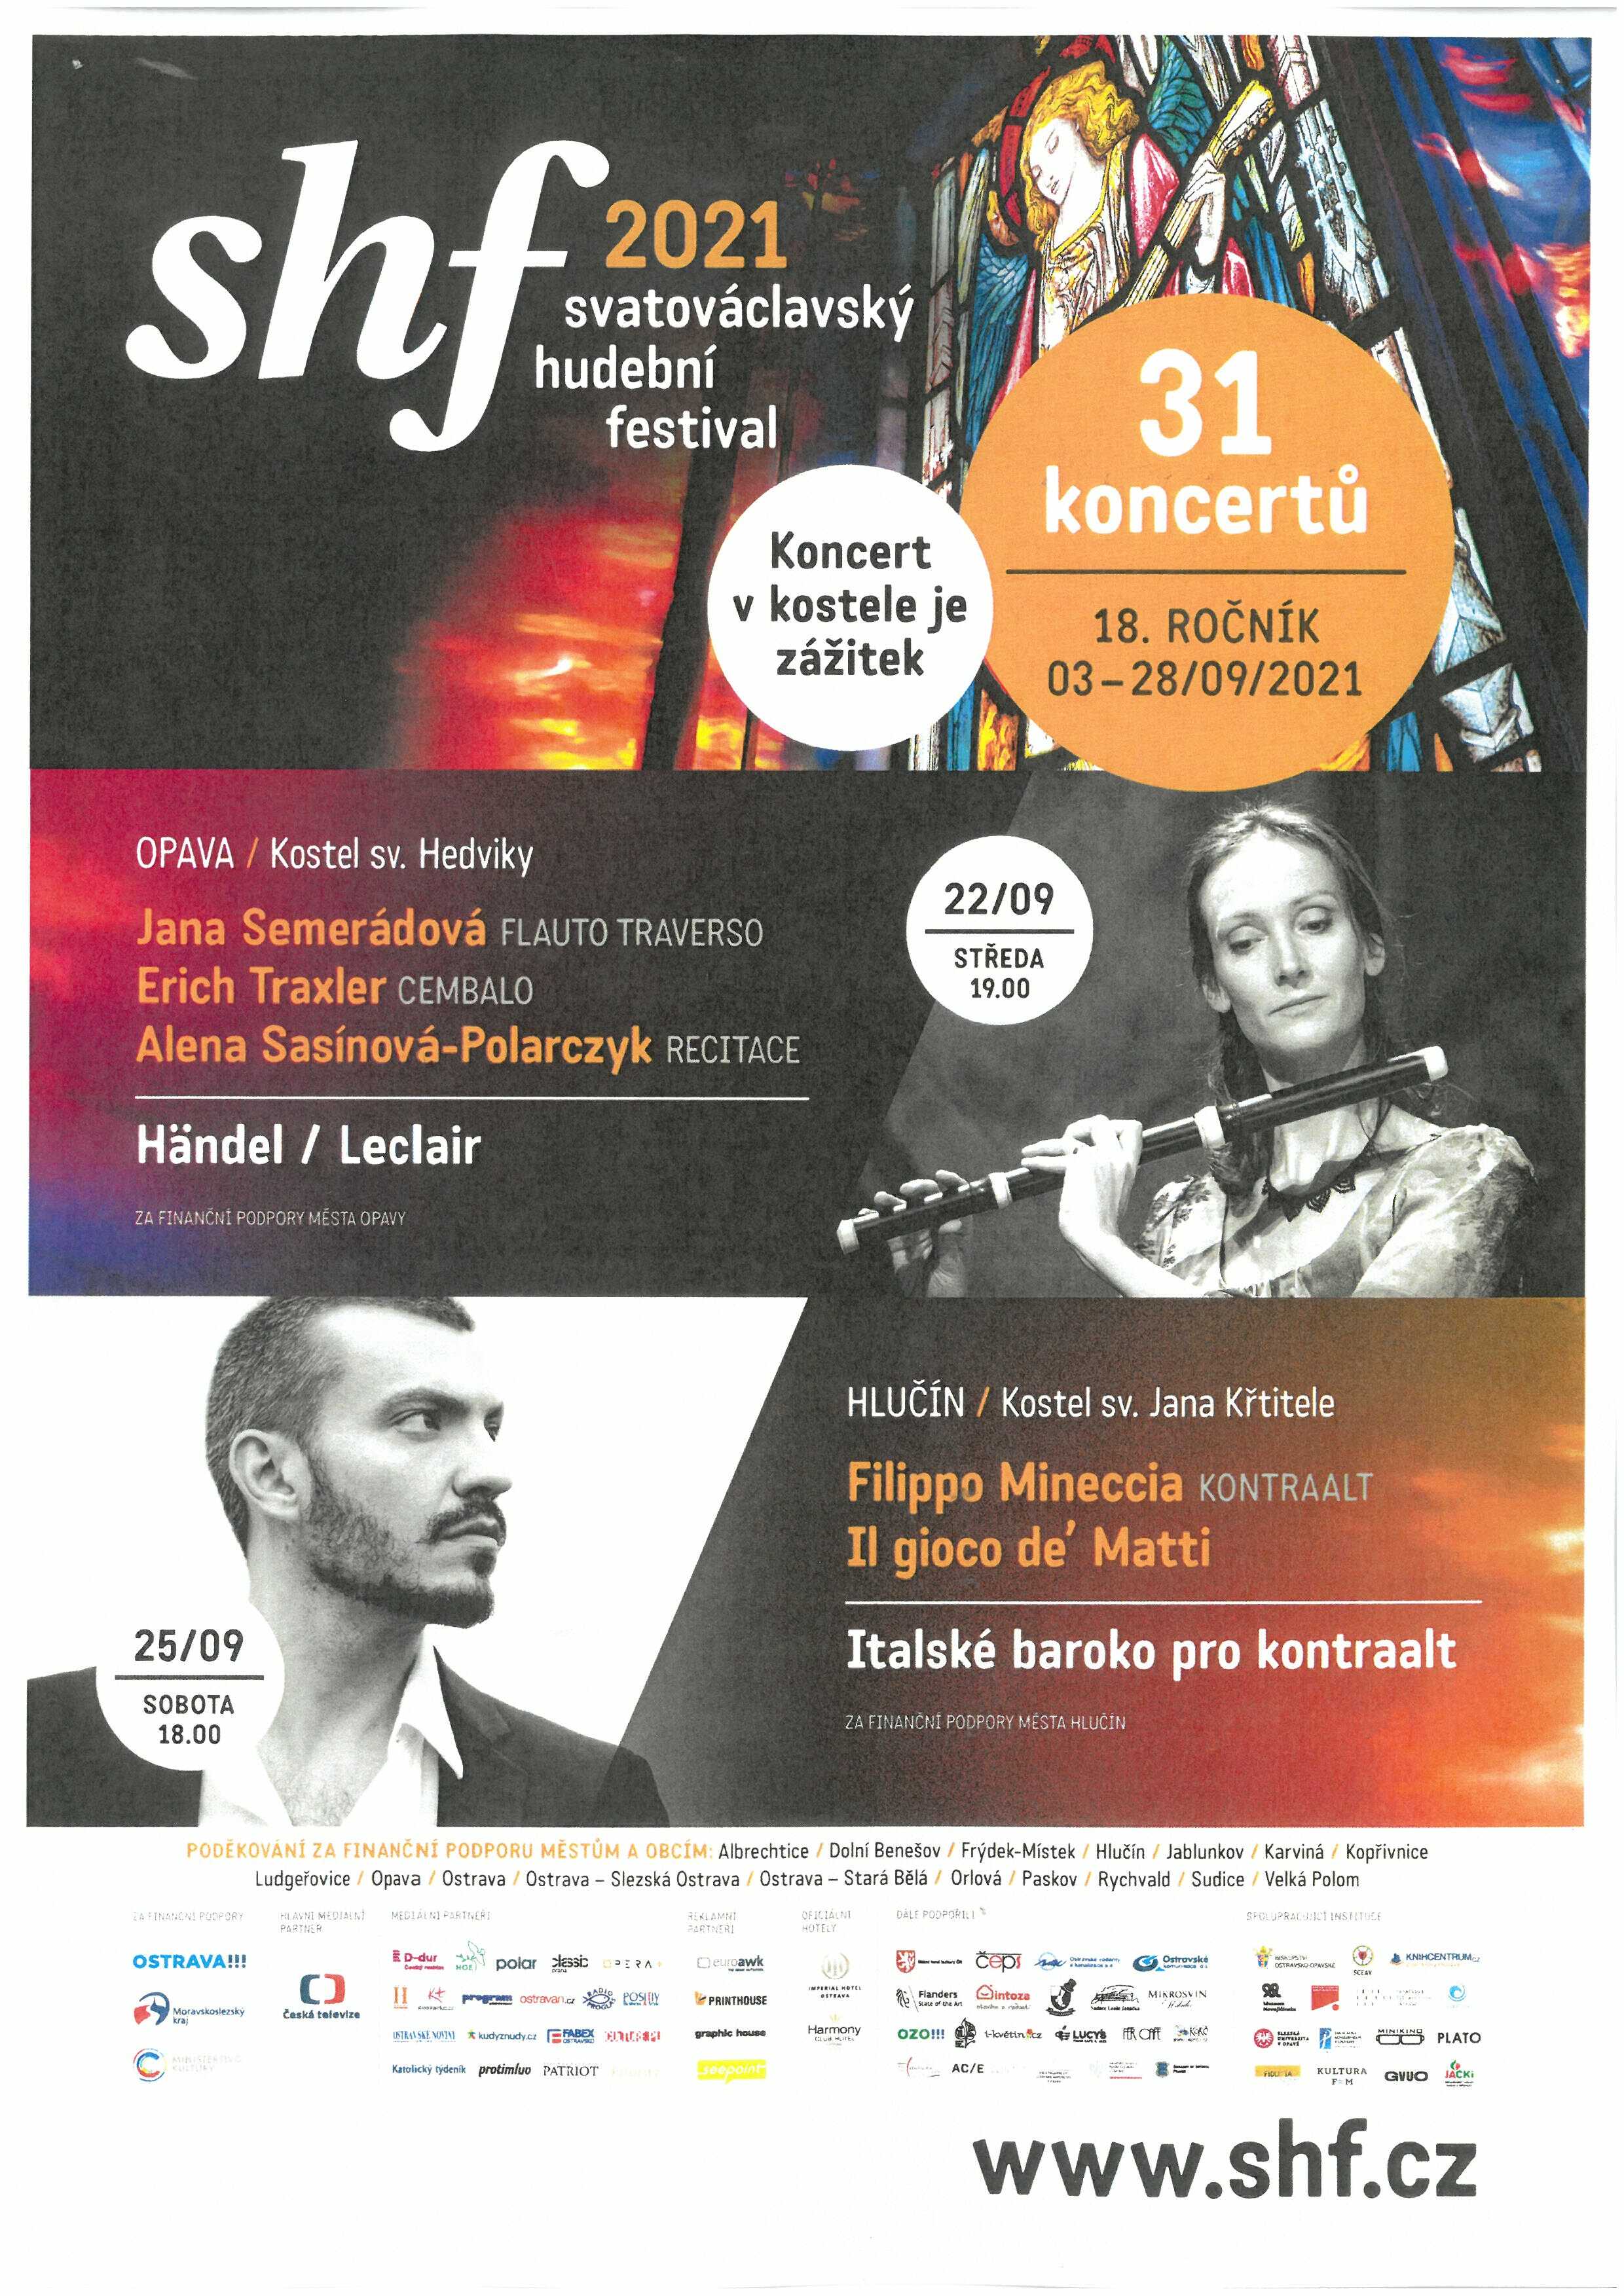 Svatováclavský hudební festival 